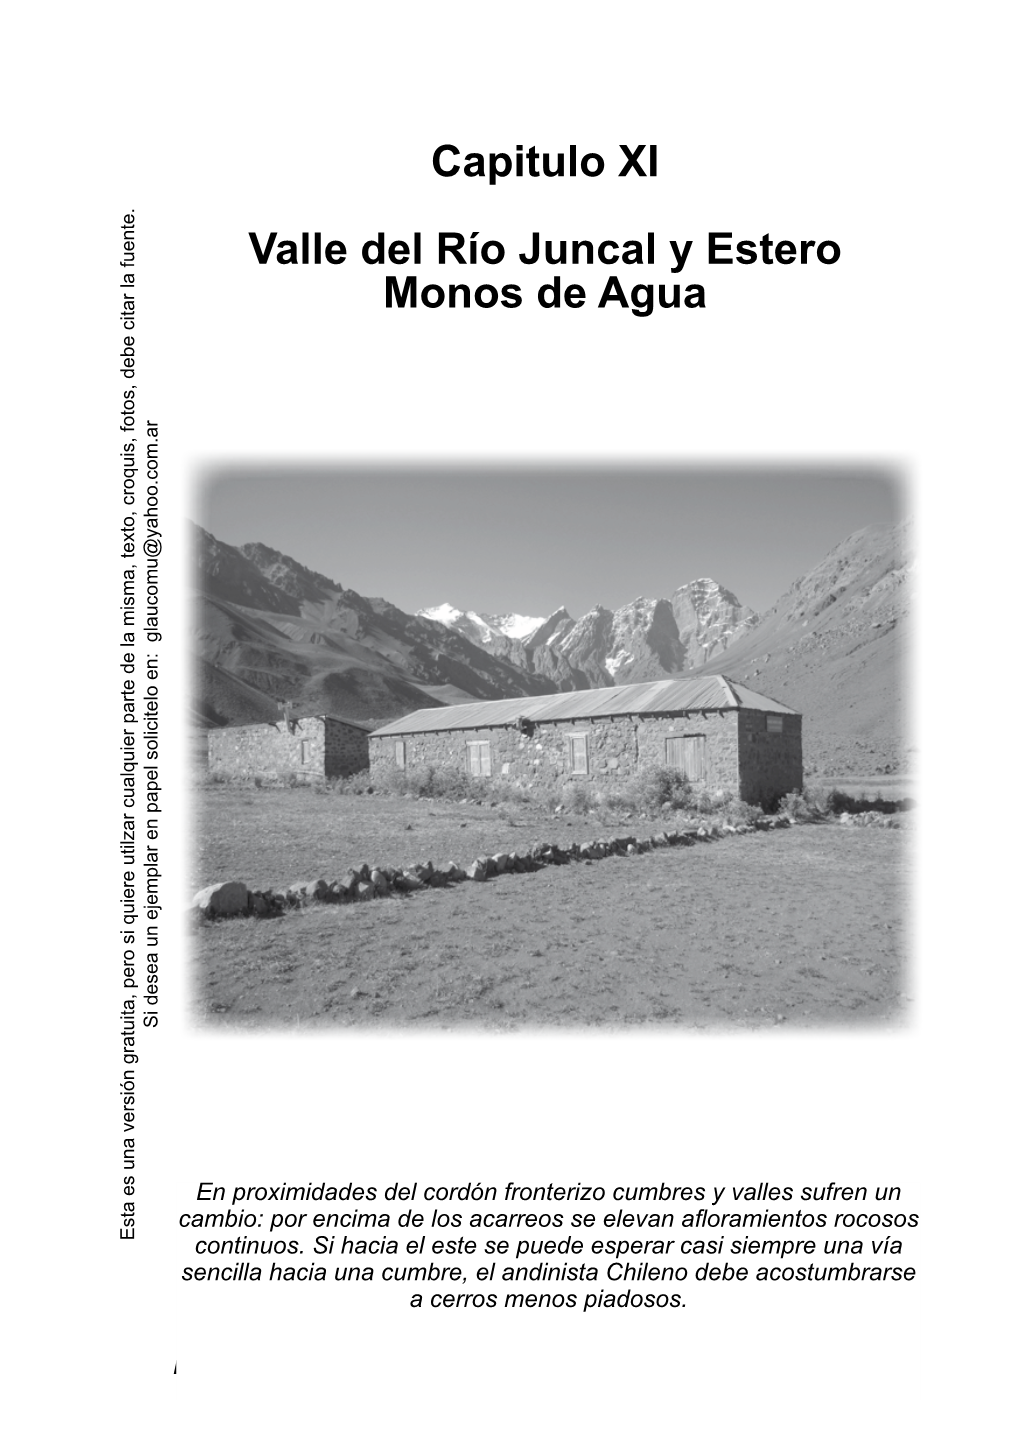 Capitulo XI Valle Del Río Juncal Y Estero Monos De Agua Si Desea Un Ejemplar En Papel Solicitelo En: Glaucomu@Yahoo.Com.Ar